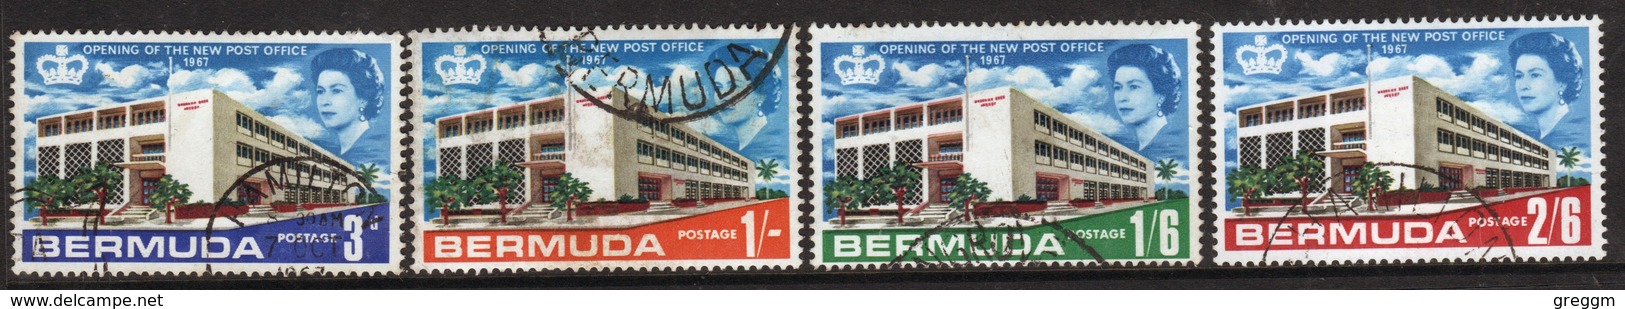 Bermuda Elizabeth II 1967 Set Of Stamps To Celebrate Opening Of New General Post Office. - Bermudas